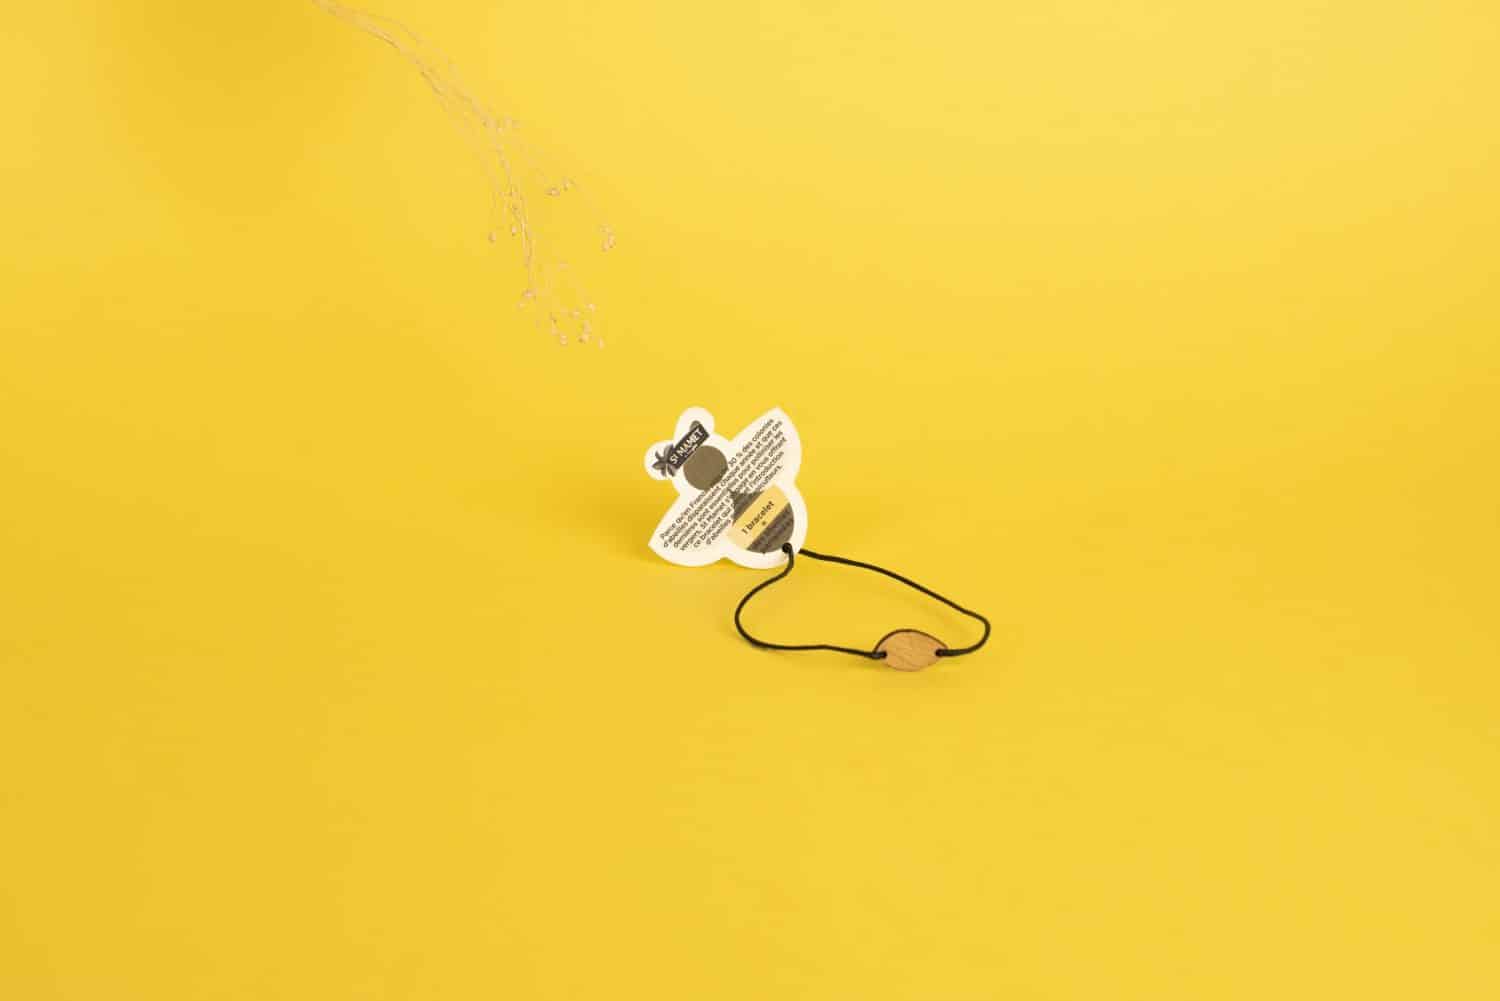 Un bracelet personnalisé mini en bois personnalisable et français avec une abeille dessus sur fond jaune.